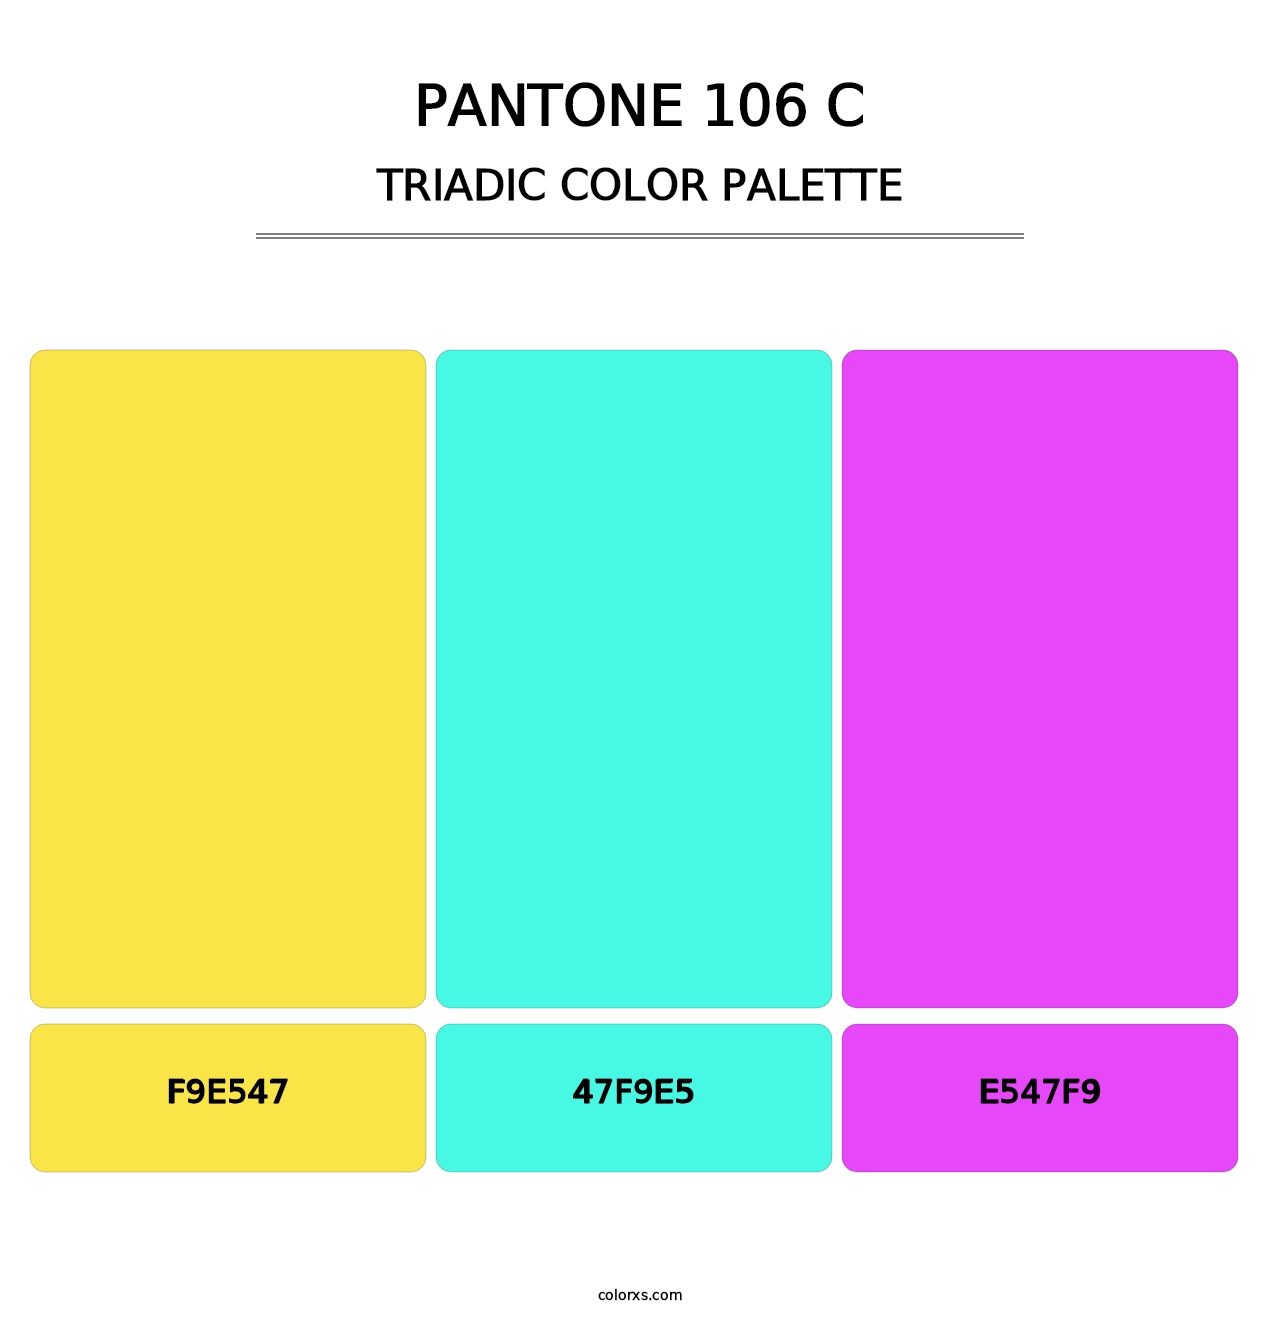 PANTONE 106 C - Triadic Color Palette